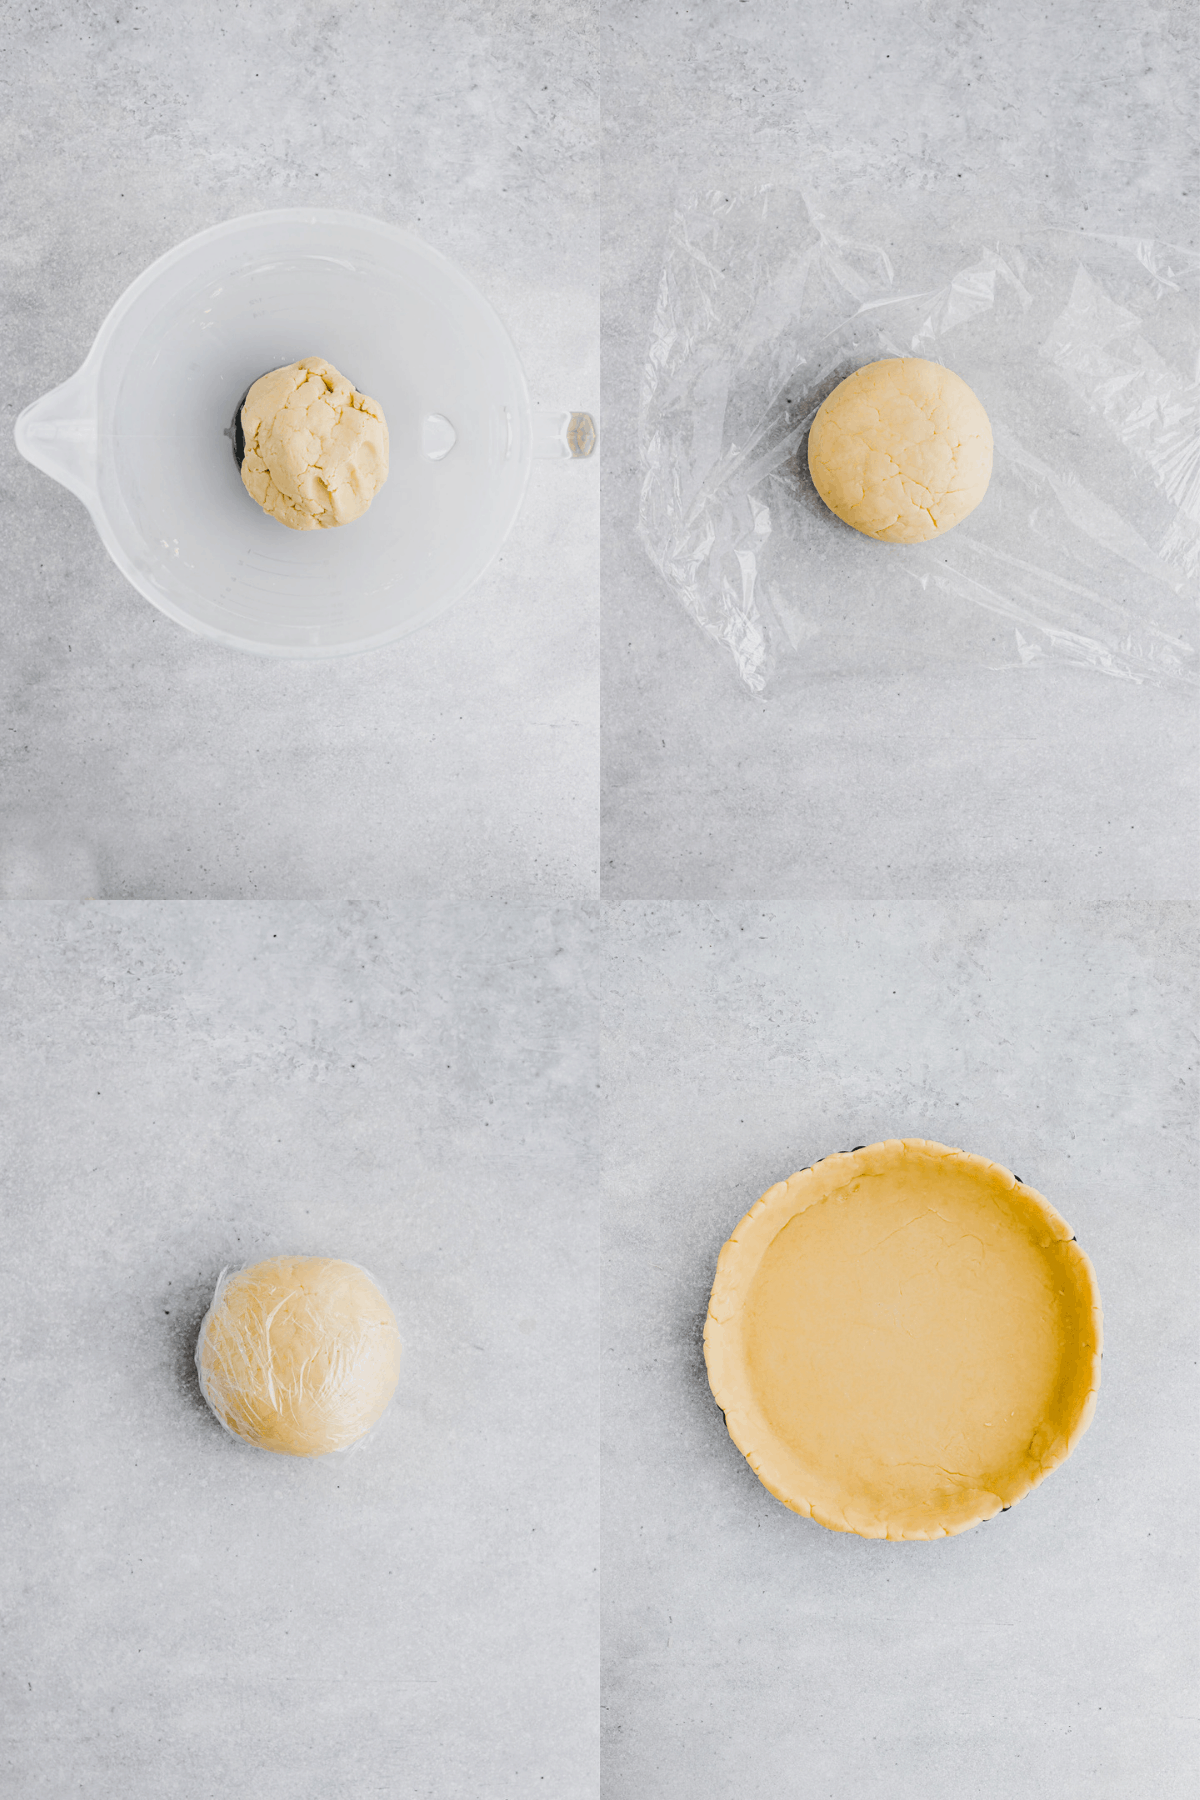 Homemade Quiche Crust Recipe Step 5-8